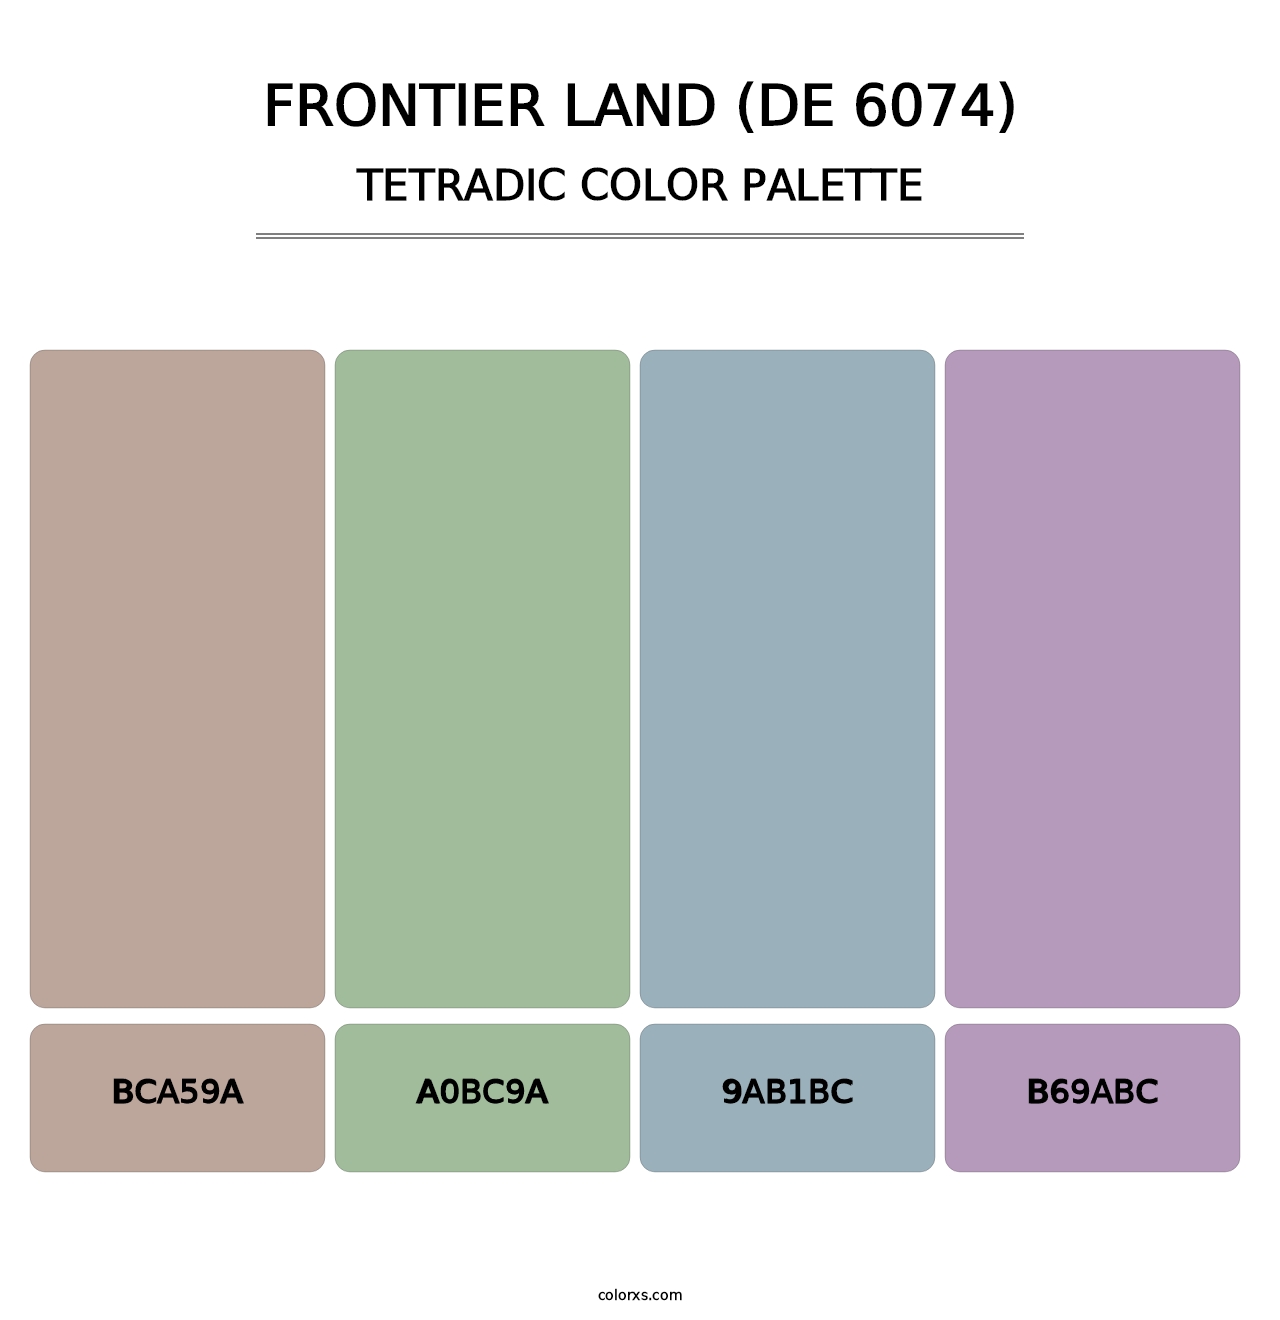 Frontier Land (DE 6074) - Tetradic Color Palette